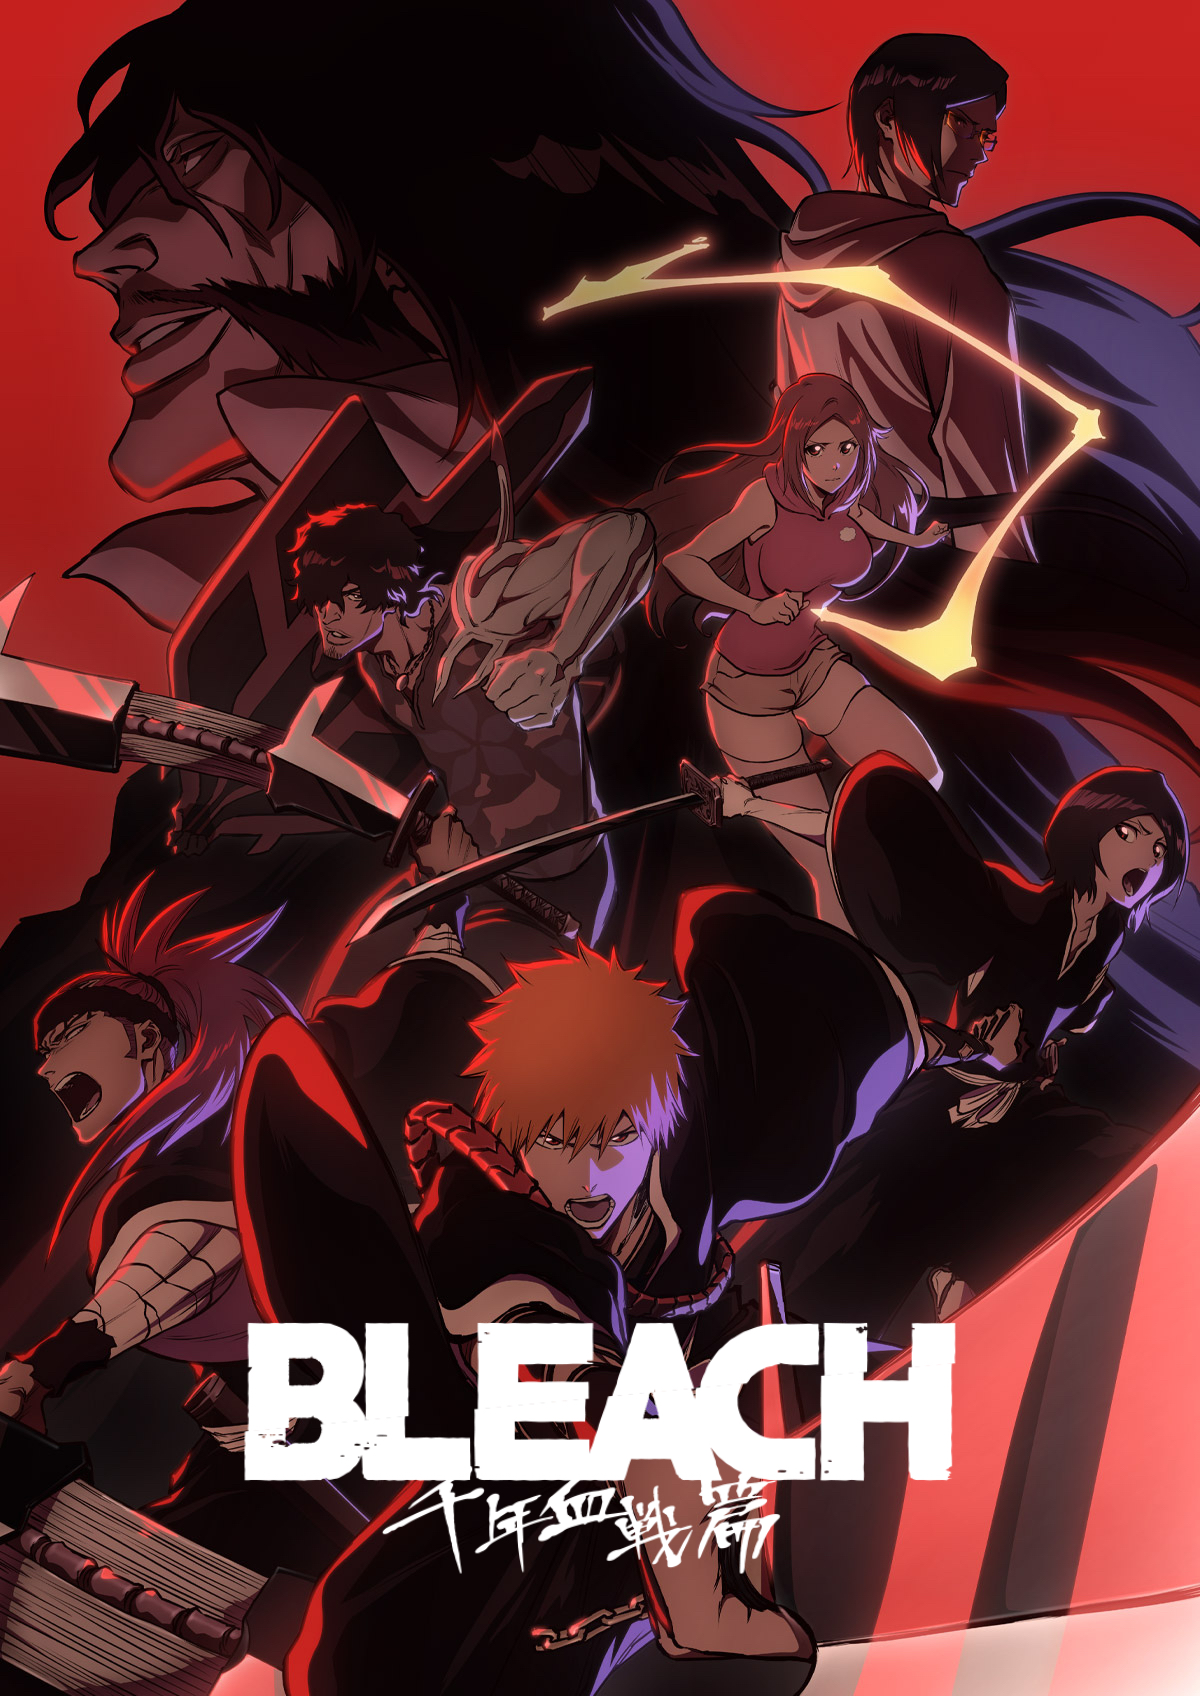 Bleach TYBW Anime Episode 2 Release Date